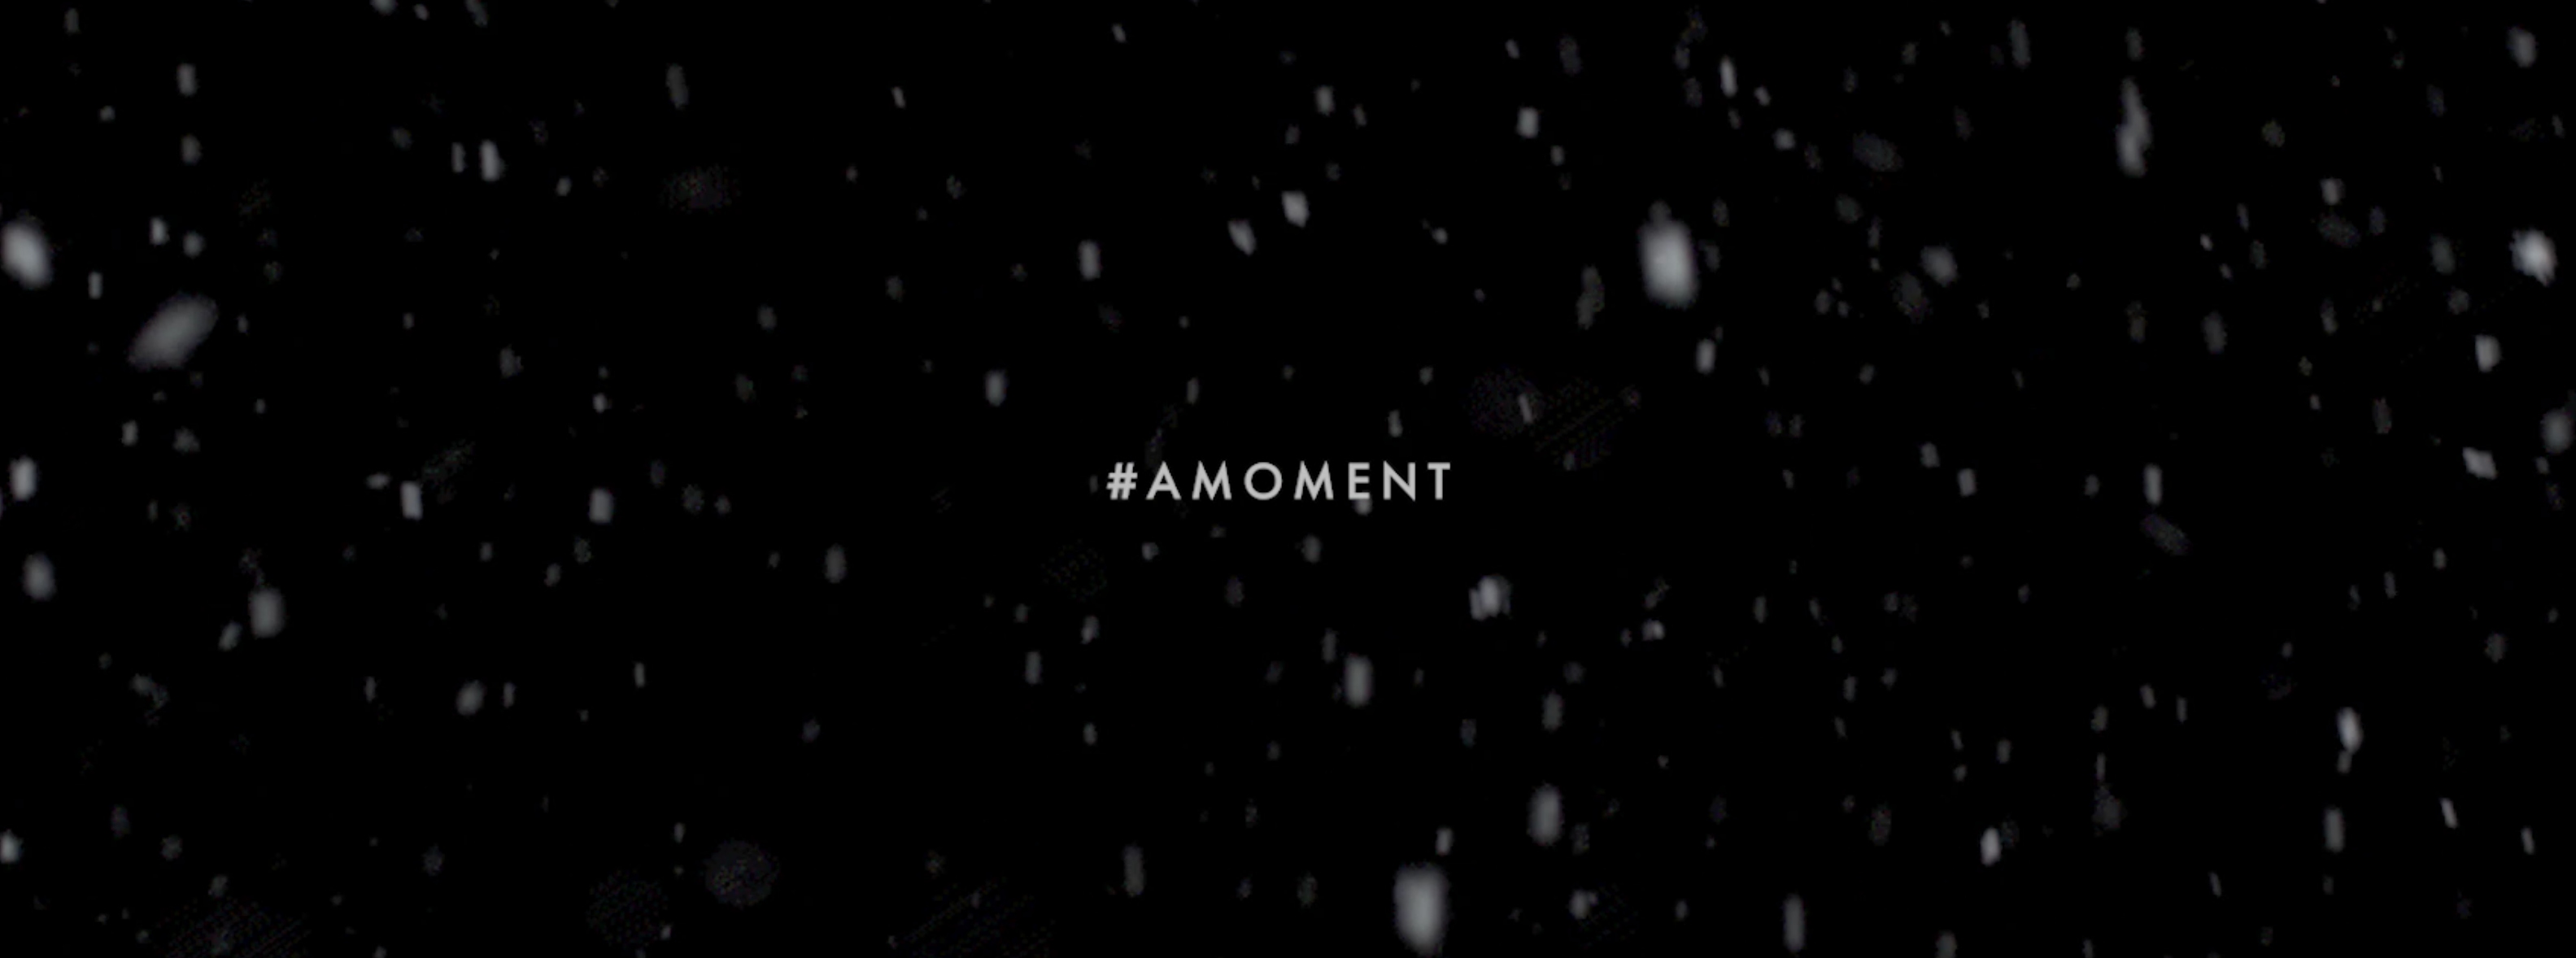 Von Eusersdorff December Campaign #AMOMENT banner snow